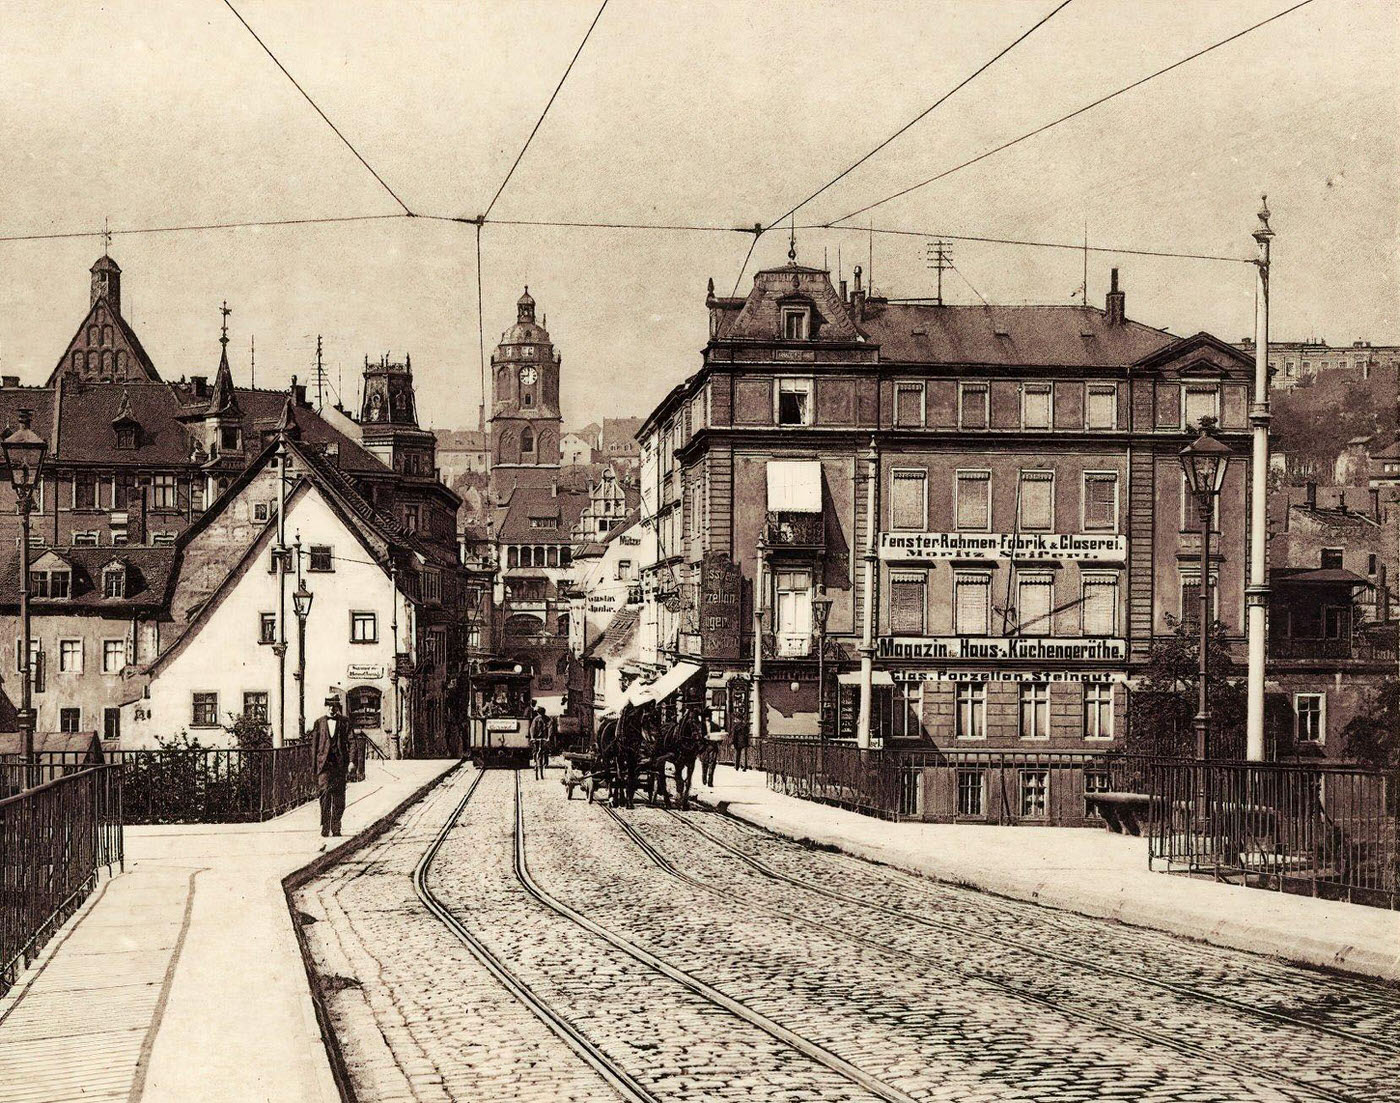 Trams in Meissen, Frauenkirche, Altstadtbrucke Meissen, Germany, 1904.